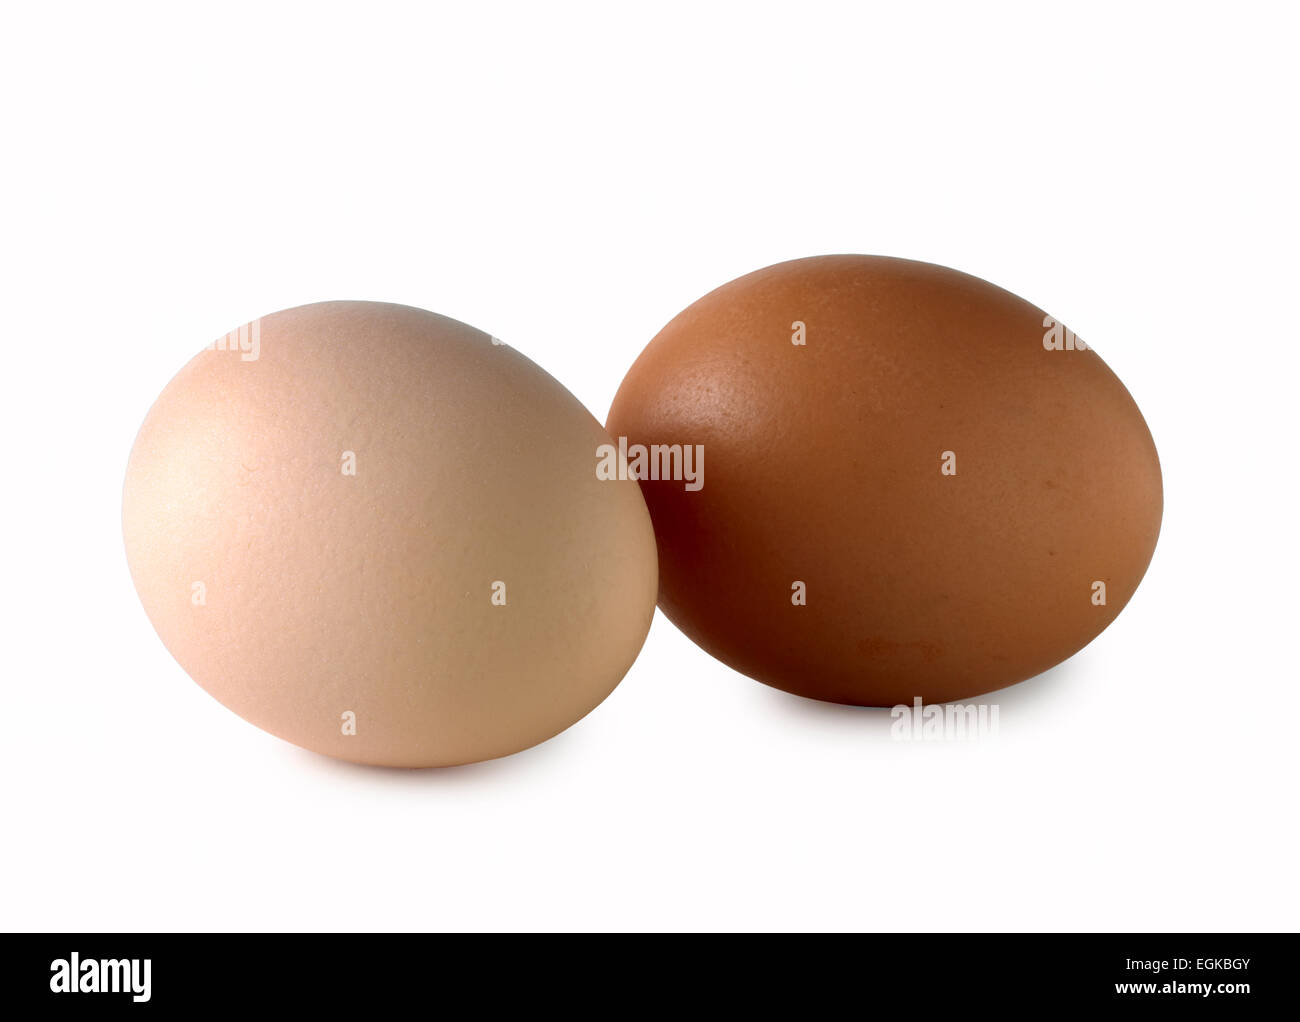 white egg brown egg Stock Photo